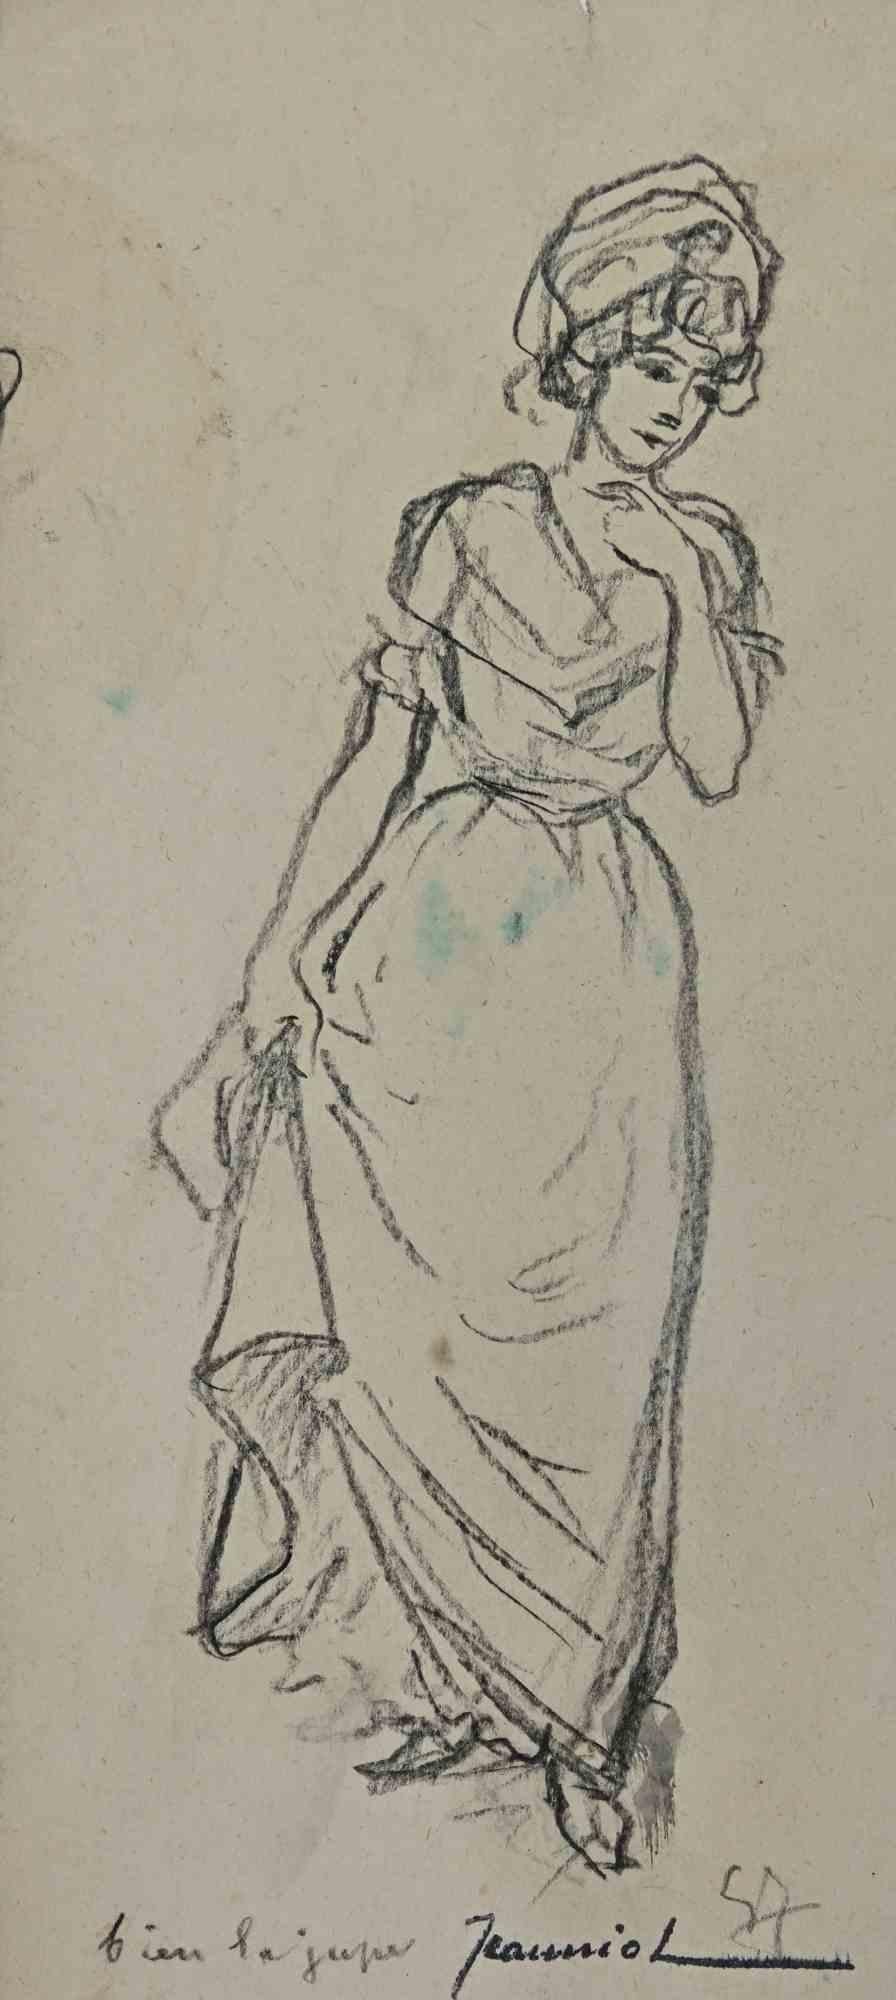 Frau ist eine Original-Zeichnung auf Papier des Malers Pierre Georges Jeanniot (1848-1934).

Zeichnen mit Kohlestift.

Handsigniert auf der Unterseite.

Guter Zustand, außer dass er gealtert ist.

Pierre-Georges Jeanniot (1848-1934) war ein